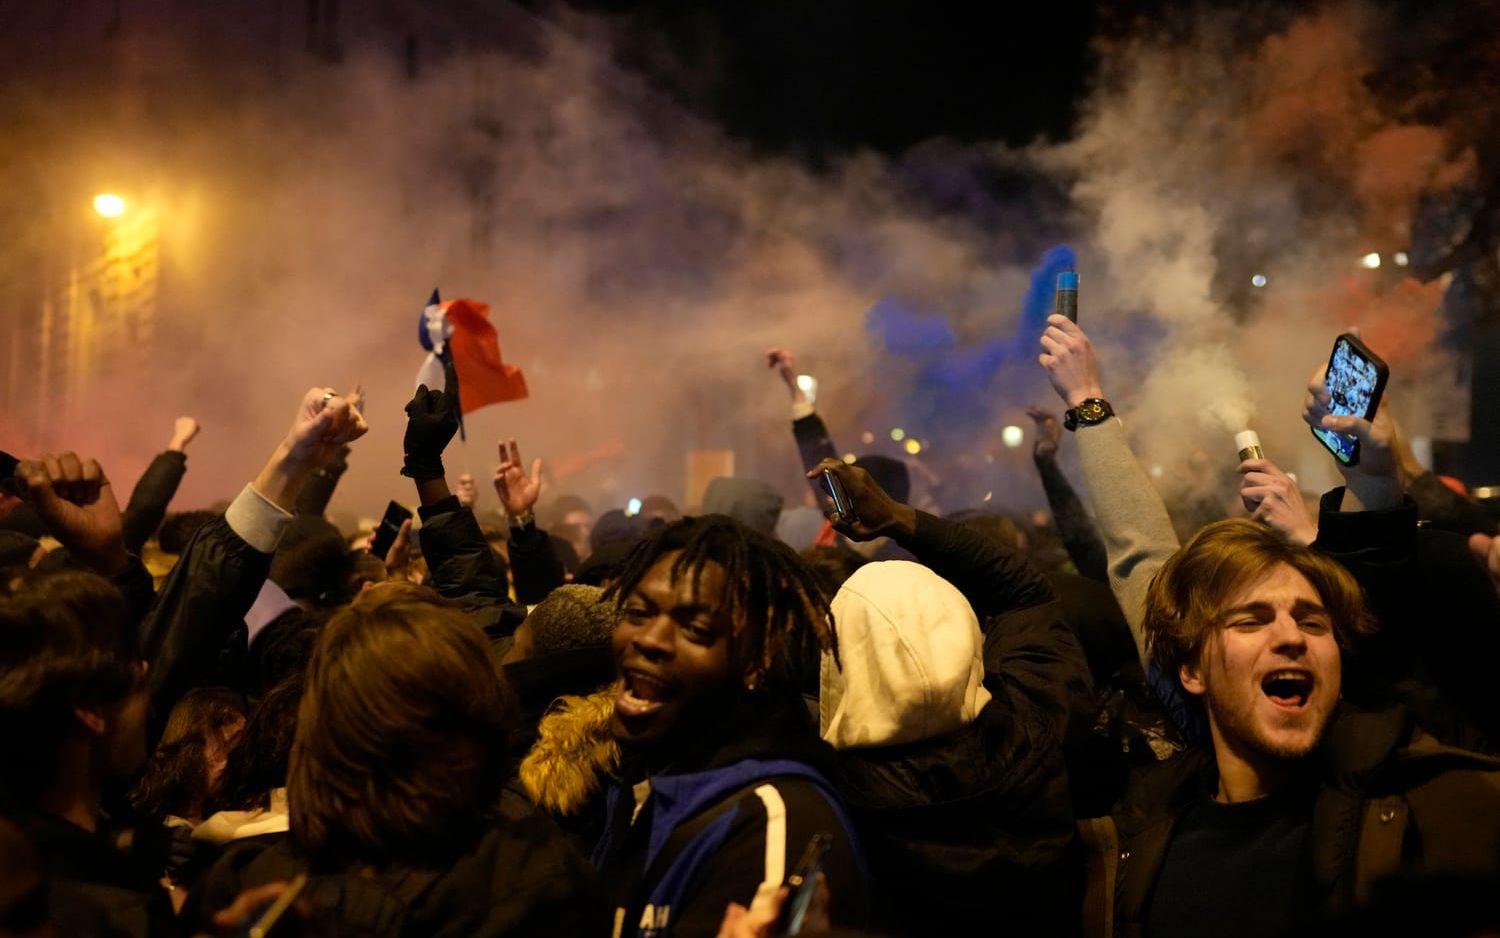 VM-firandet spårade ur. Enligt flera medier blev en tonåring ihjälkörd i Montpellier.